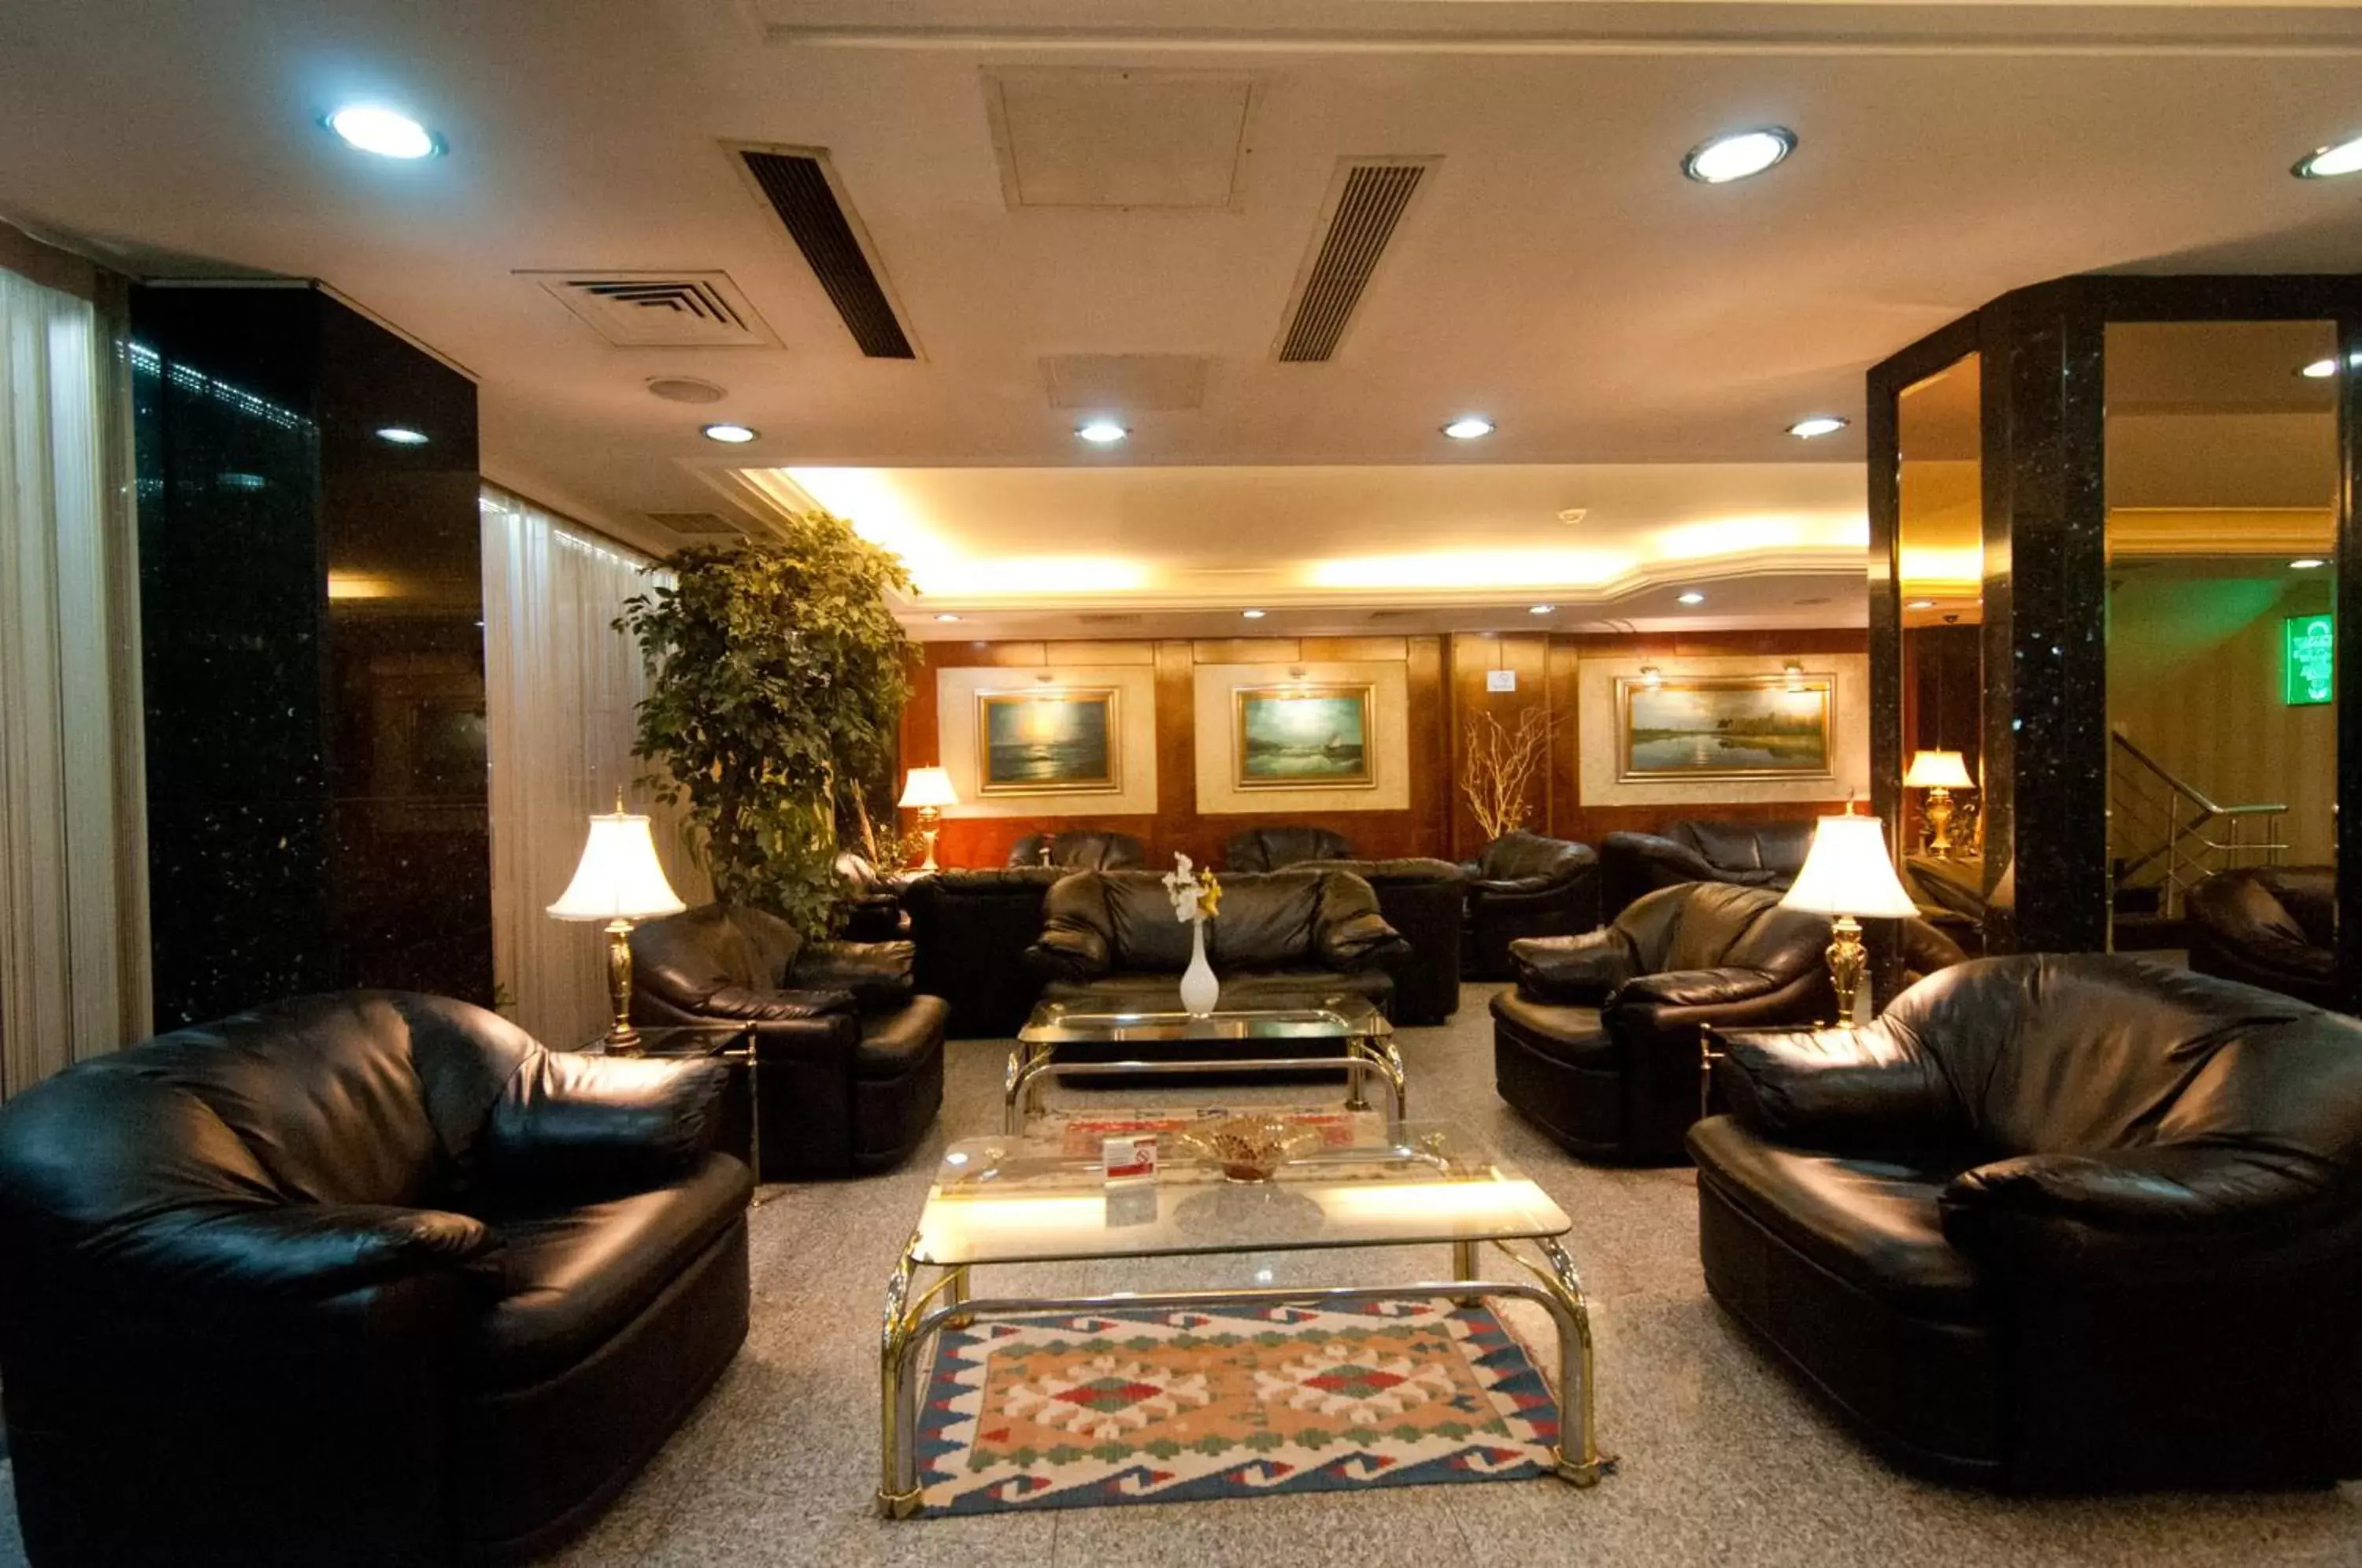 Lobby or reception, Lobby/Reception in Grand Hilarium Hotel